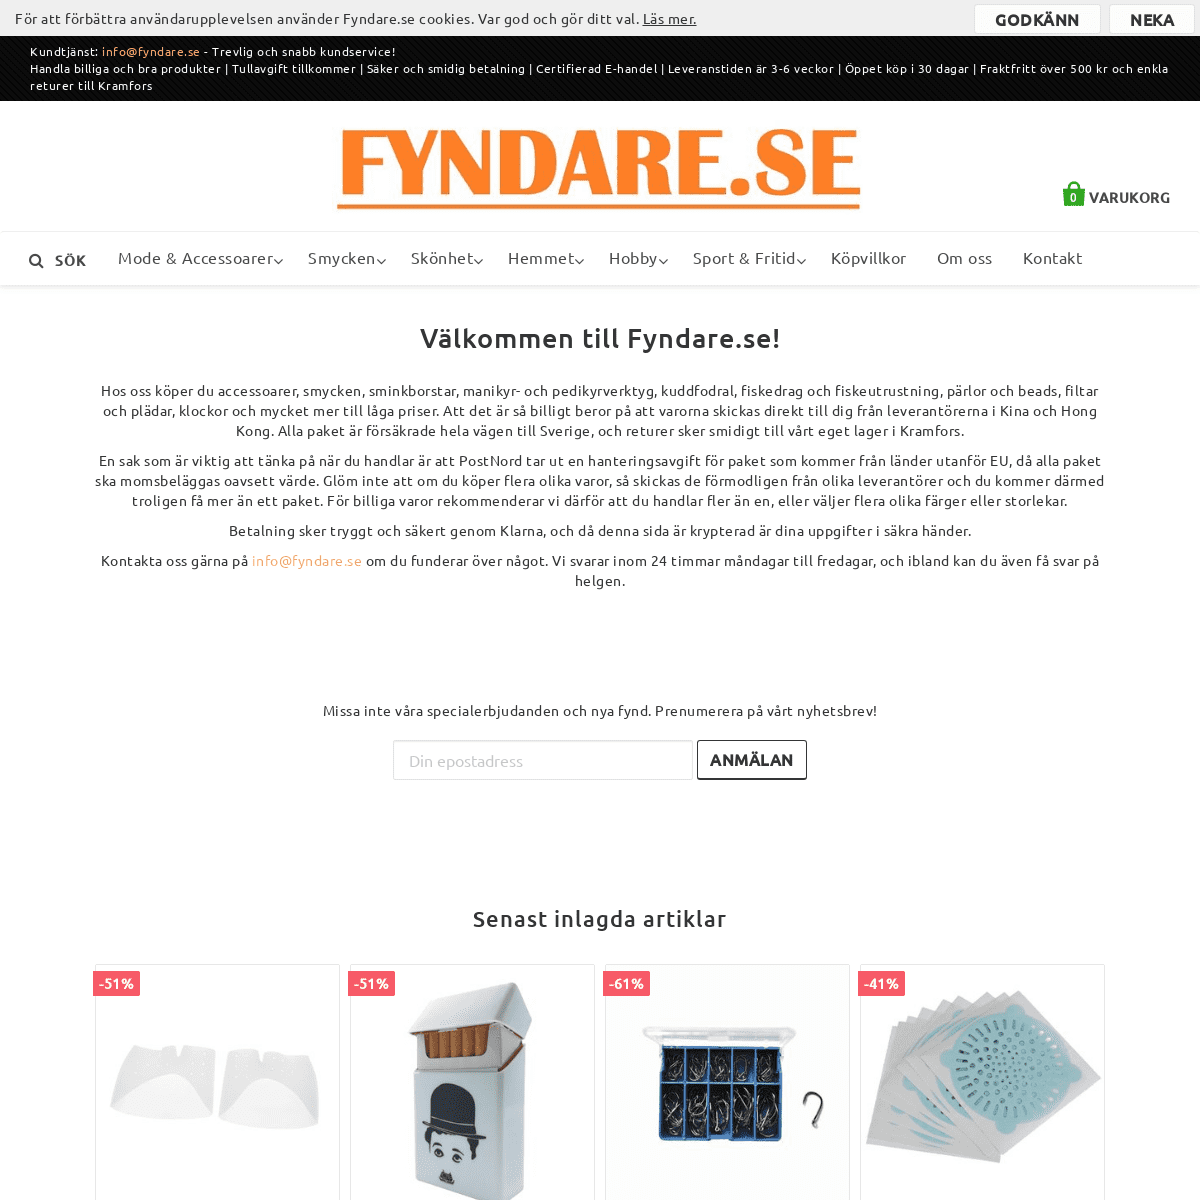 A complete backup of fyndare.se